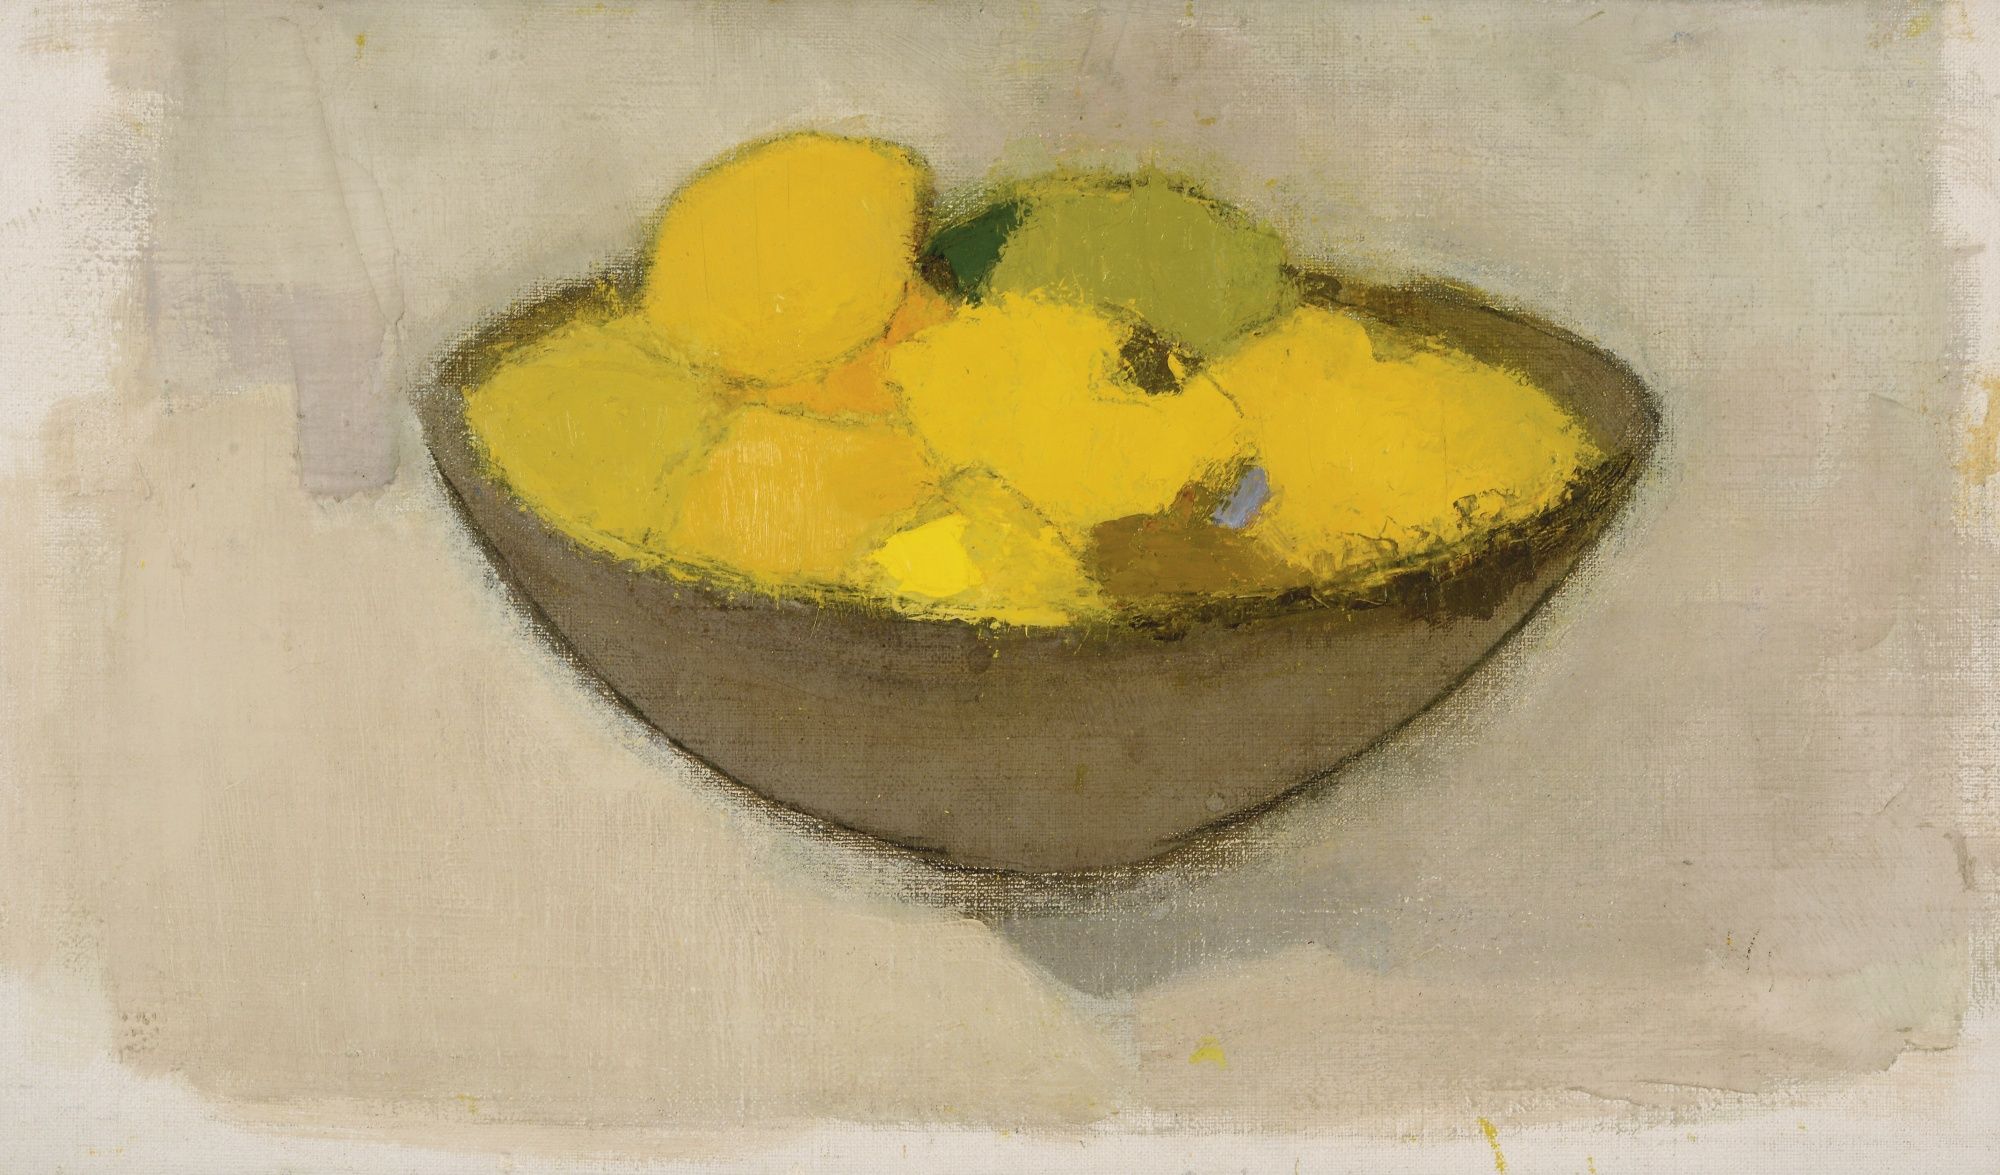 碗裡的檸檬 by Helene Schjerfbeck - 1934 年 - 34.5 x 59.5 公分 